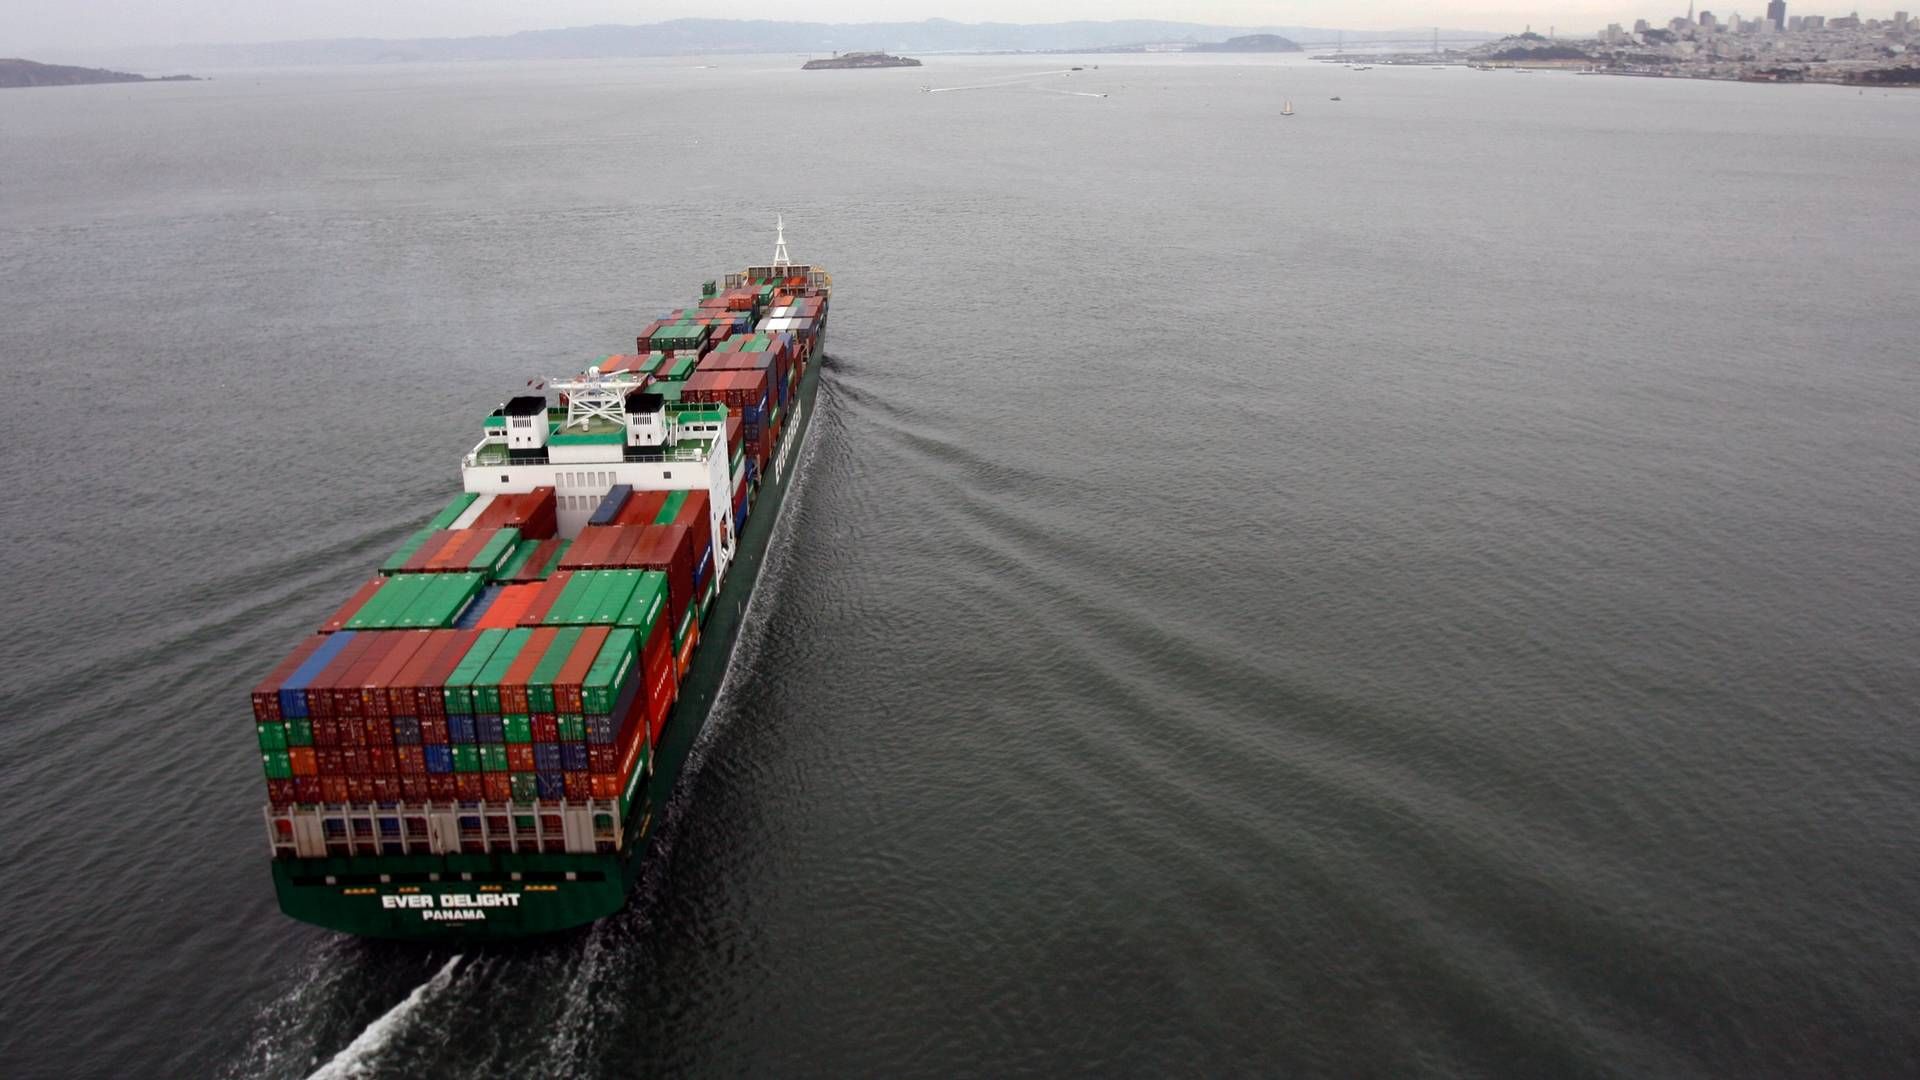 De mer enn 180 skipene som er bestilt med dual-fuel-motorer blir ikke sett på som en klar nok etterspørsel etter grønne drivstoff, avslører en ny rapport. | Foto: Paul Chinn/AP/NTB Scanpix